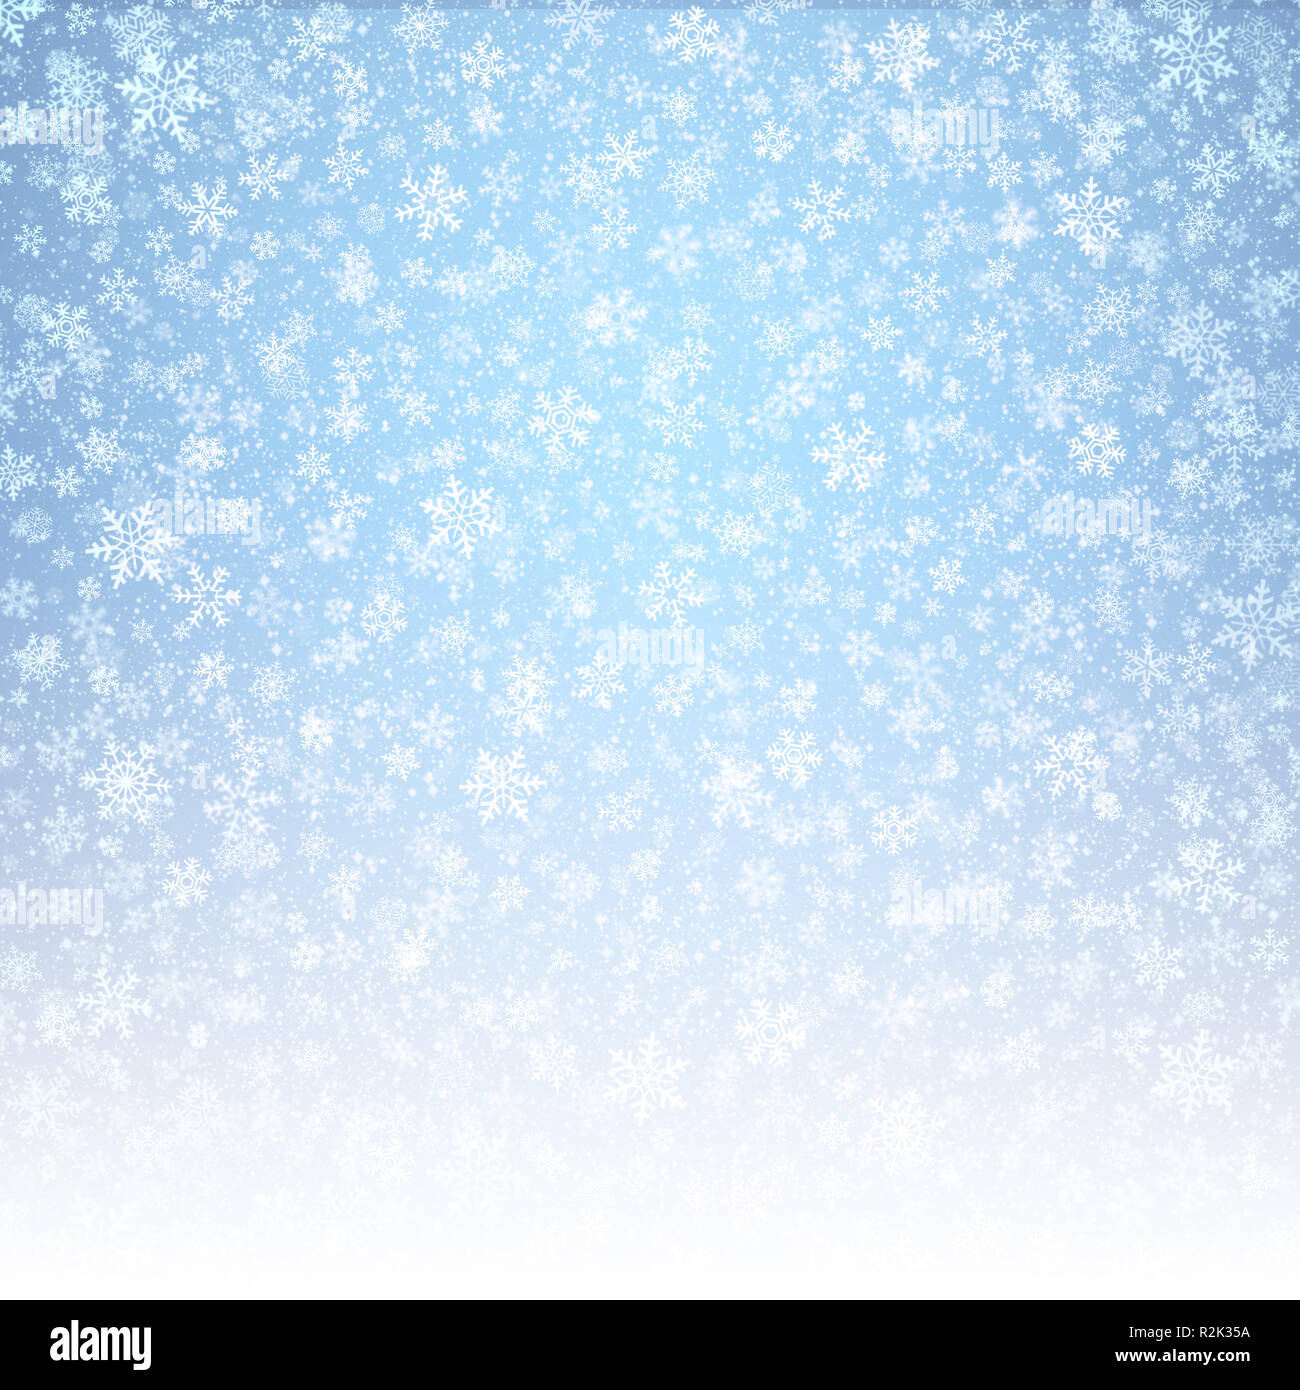 Weiße Schneeflocken Formen und fallenden Schnee auf einem vereisten blauen Hintergrund. Winter saison Material. Stockfoto